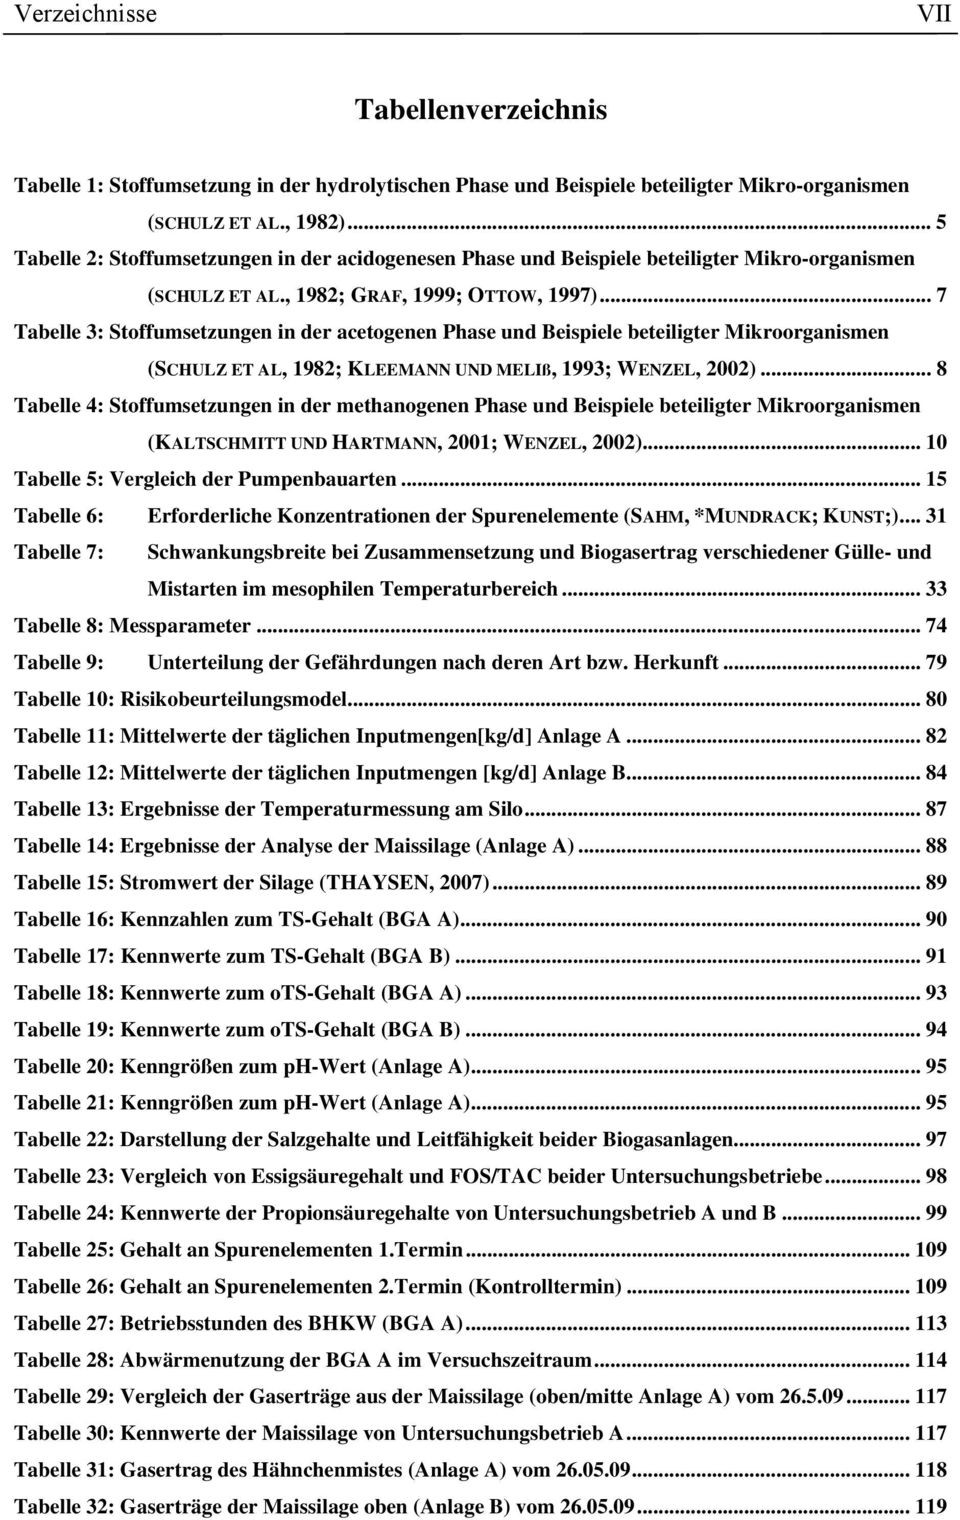 .. 7 Tabelle 3: Stoffumsetzungen in der acetogenen Phase und Beispiele beteiligter Mikroorganismen (SCHULZ ET AL, 1982; KLEEMANN UND MELIß, 1993; WENZEL, 2002).